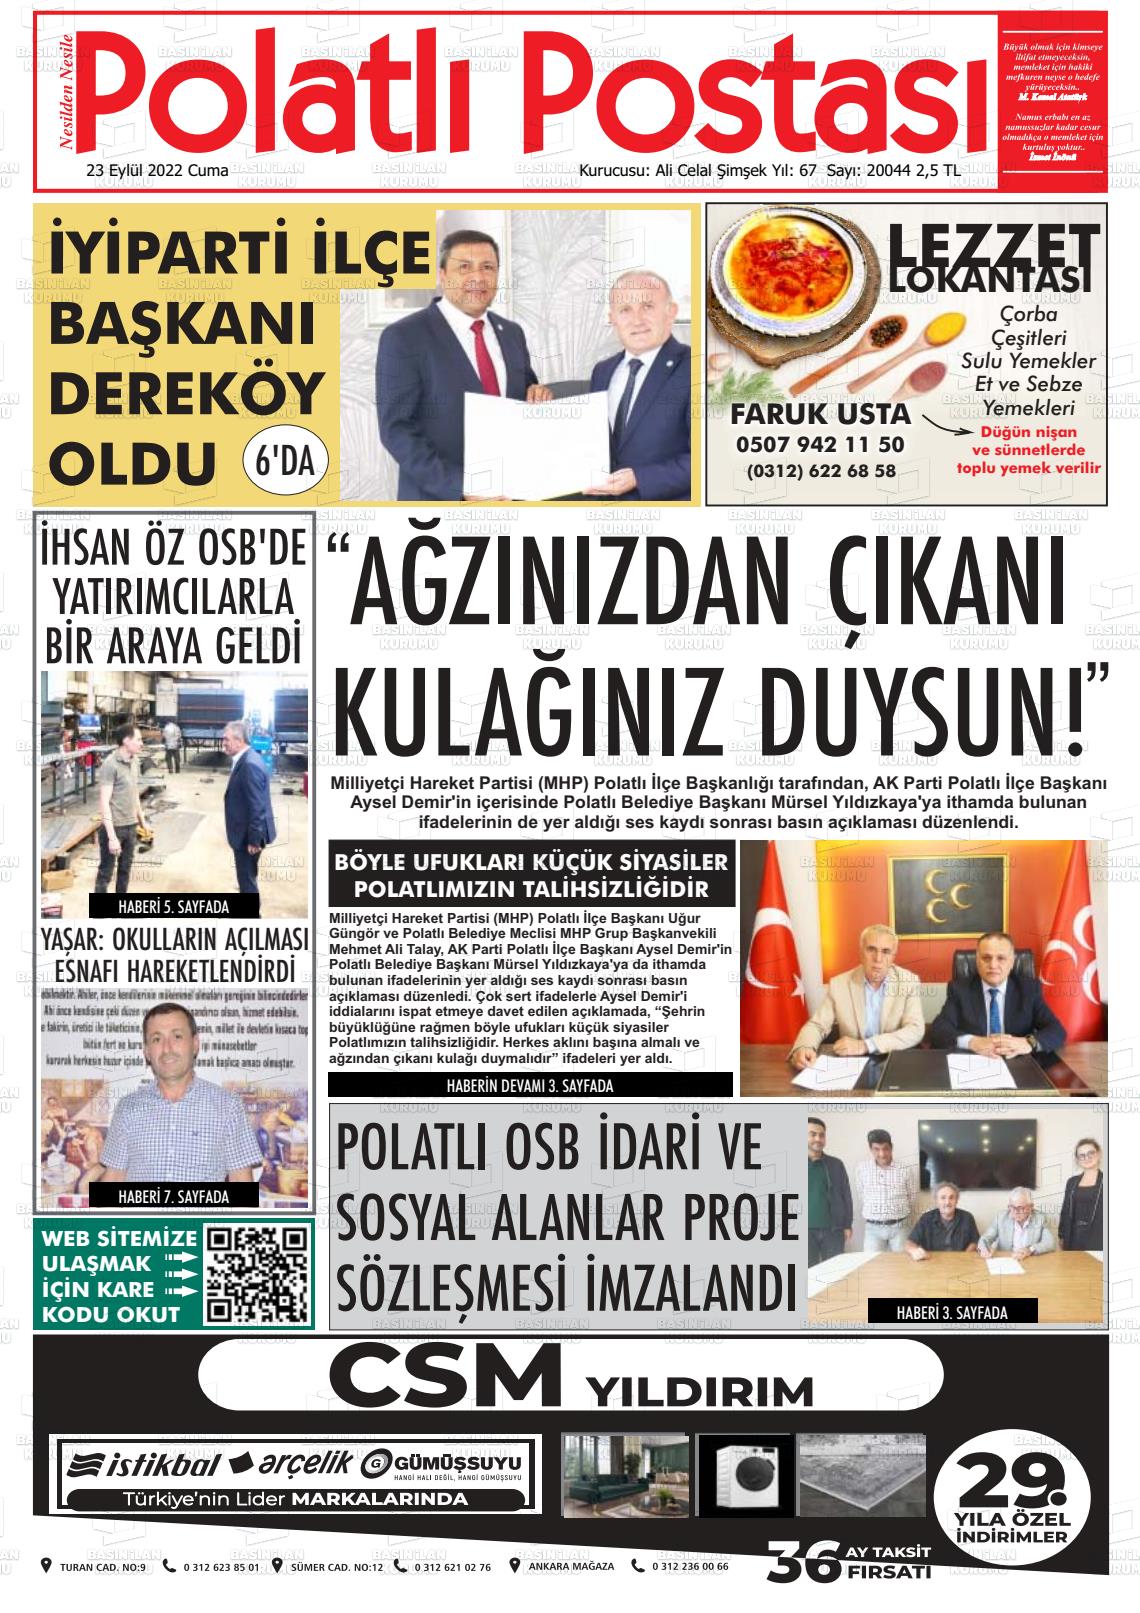 23 Eylül 2022 Polatlı Postası Gazete Manşeti